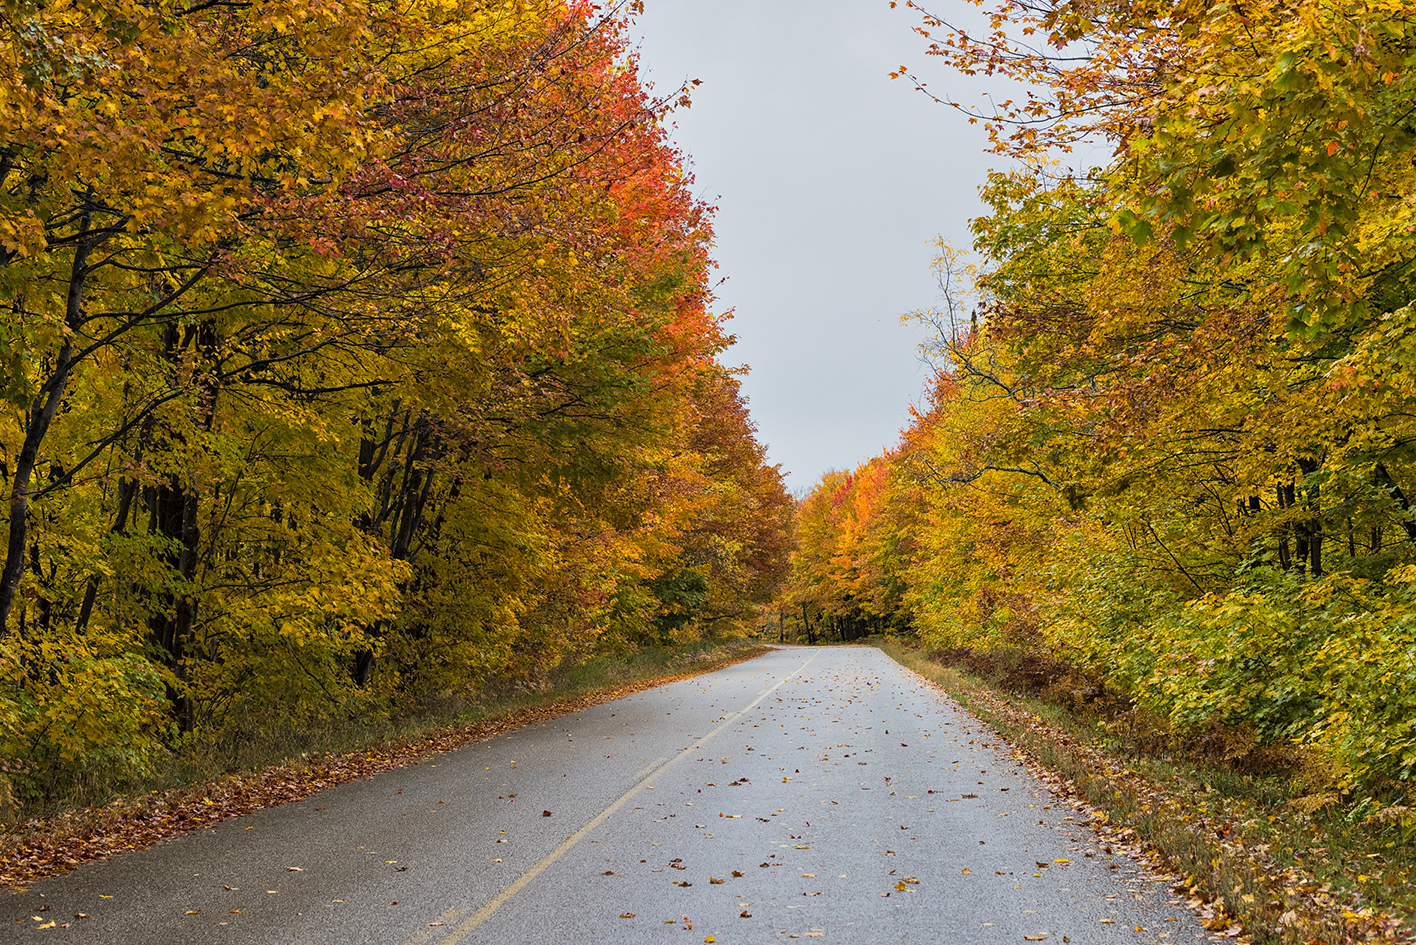 Down an Autumn Road